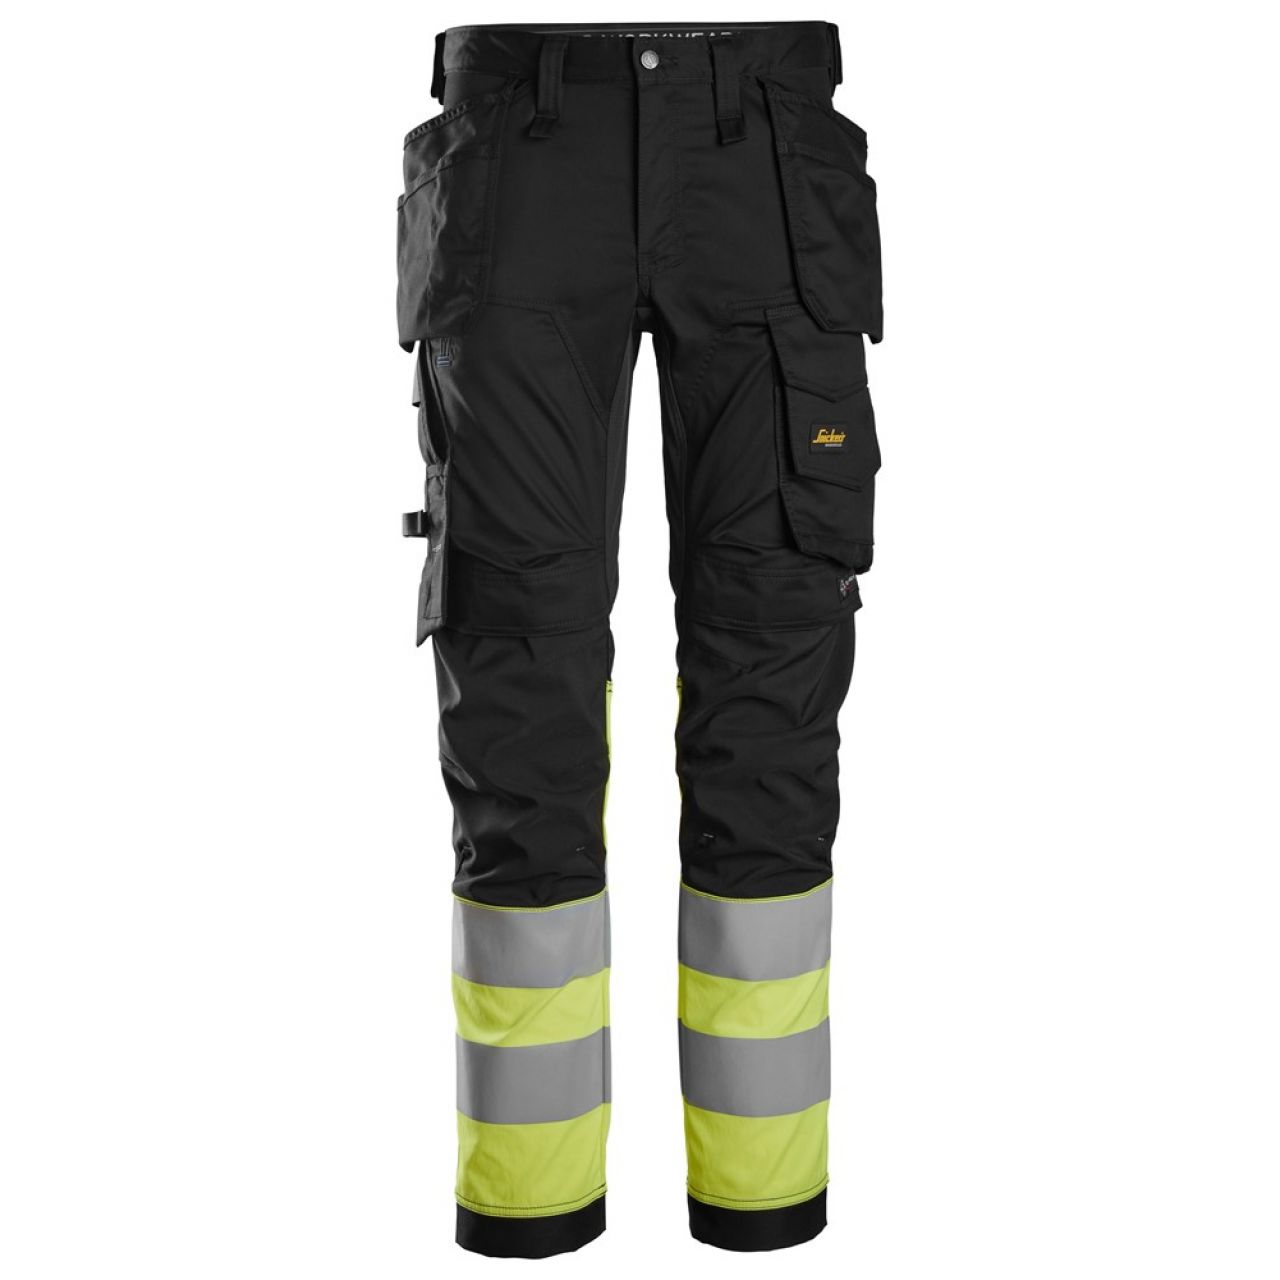 6234 Pantalones largos de trabajo elásticos de alta visibilidad clase 1 con bolsillos flotantes negro-amarillo talla 108